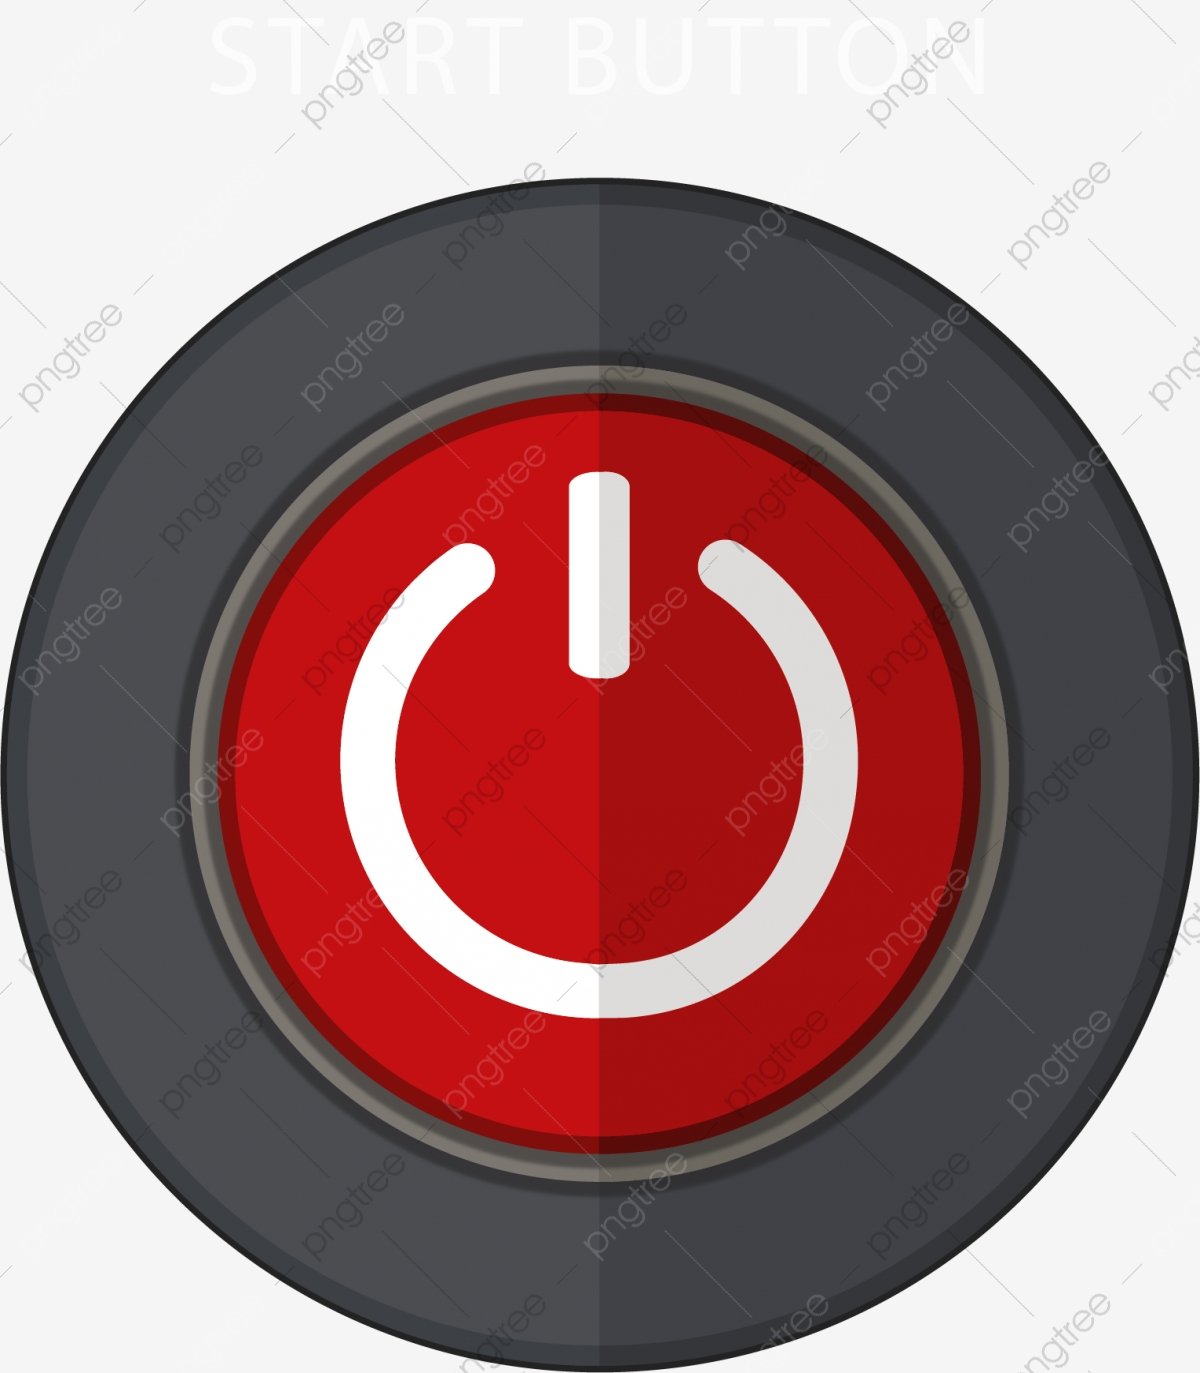 El Botón Boton Rojo Cambiar Botón De Cambio, El Botón, Botón De.